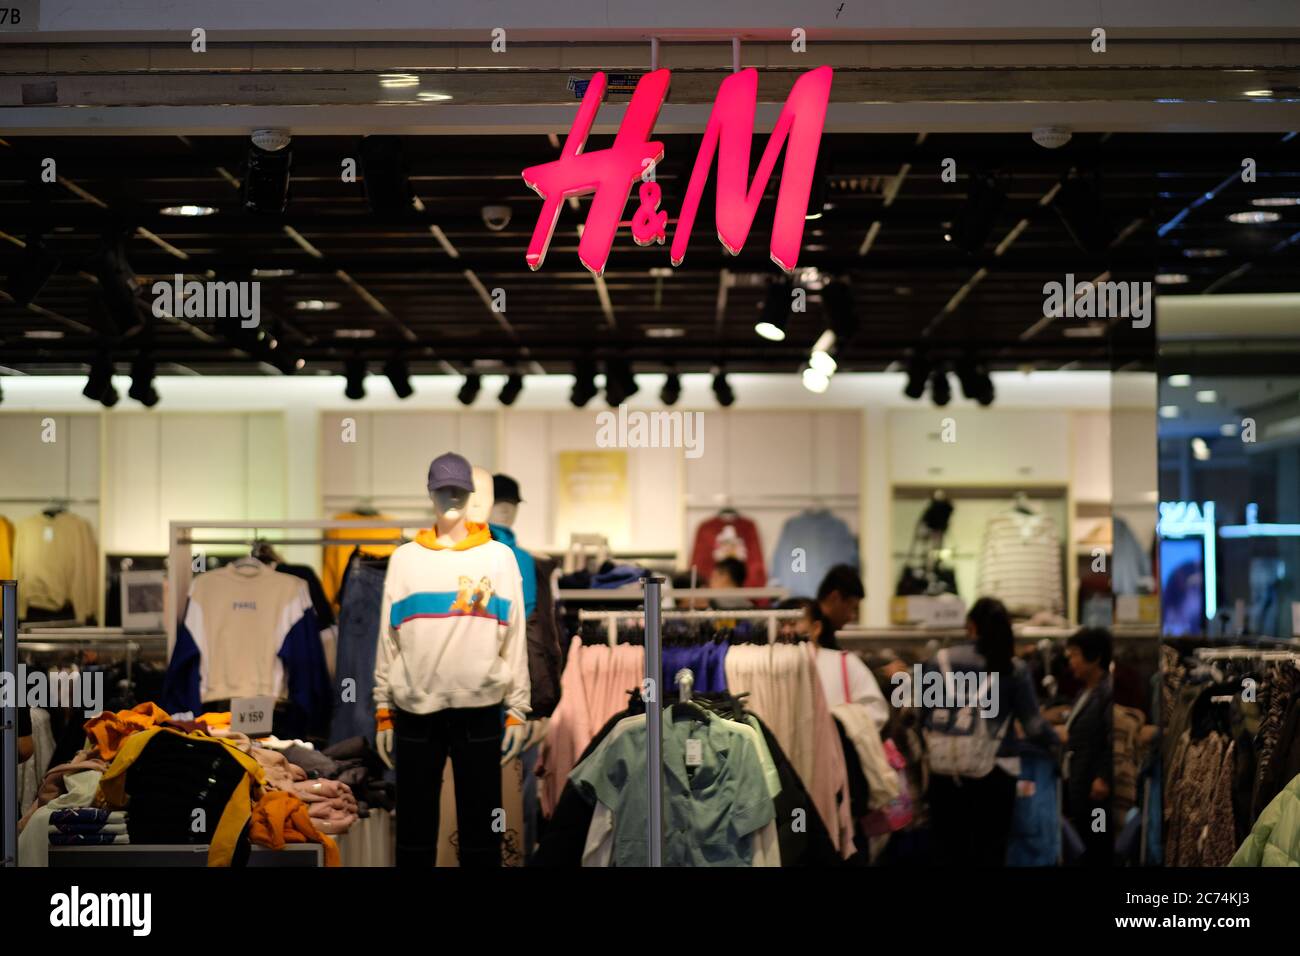 Fachada de la tienda de ropa H&M. Logotipo rojo brillante colgado en la entrada. la tienda de ropa y los clientes como fondo. Una Marca de moda sueca Fotografía de stock -